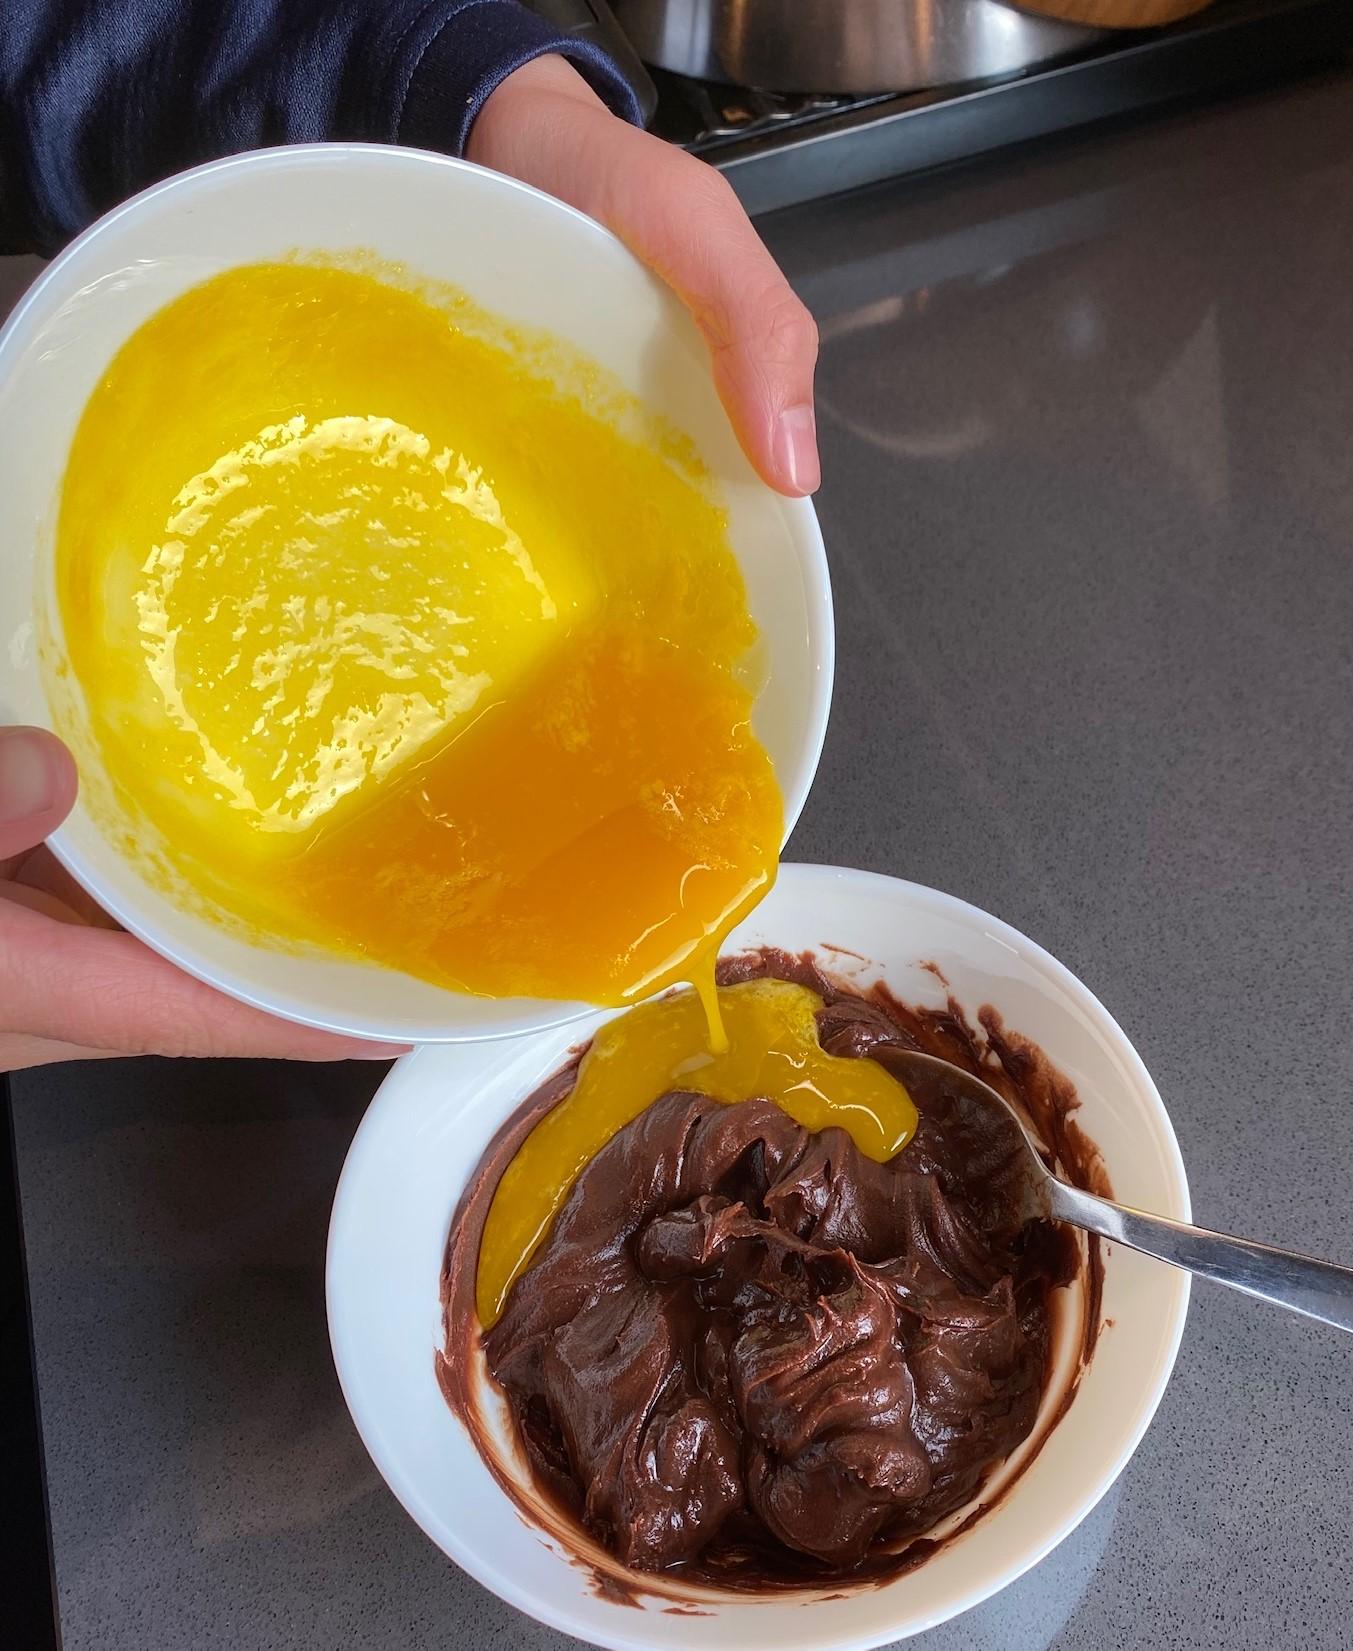 Sjokoladekrem: sjokolade, smør og pulverkaffe varmes og avkjøles til den tykner litt.